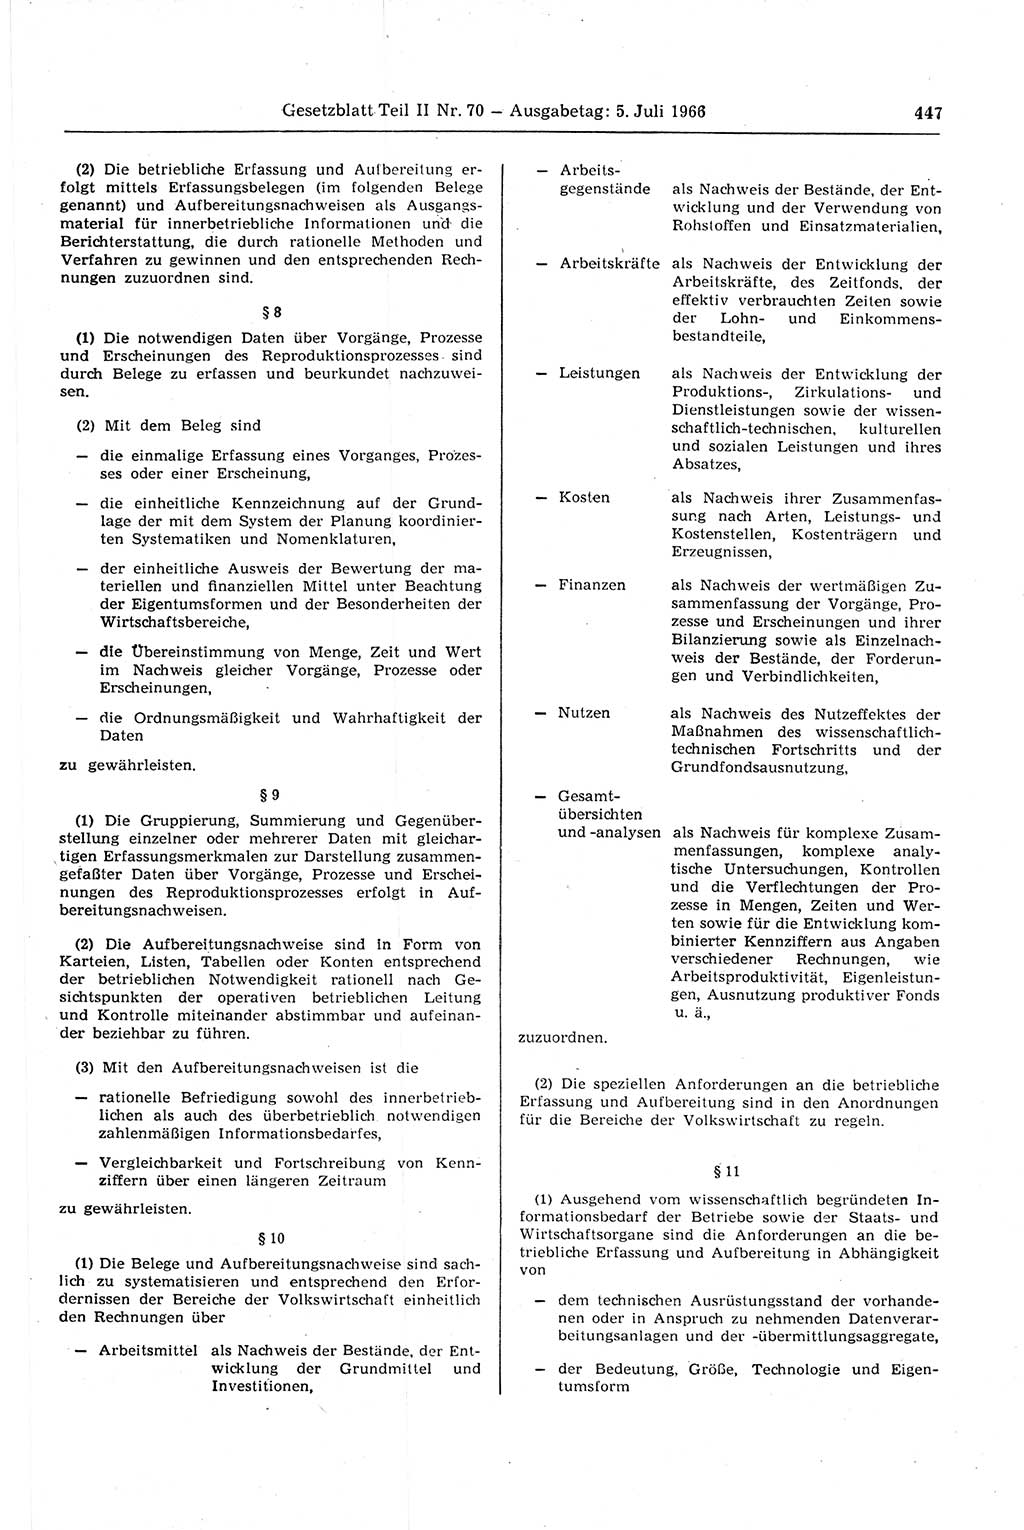 Gesetzblatt (GBl.) der Deutschen Demokratischen Republik (DDR) Teil ⅠⅠ 1966, Seite 447 (GBl. DDR ⅠⅠ 1966, S. 447)